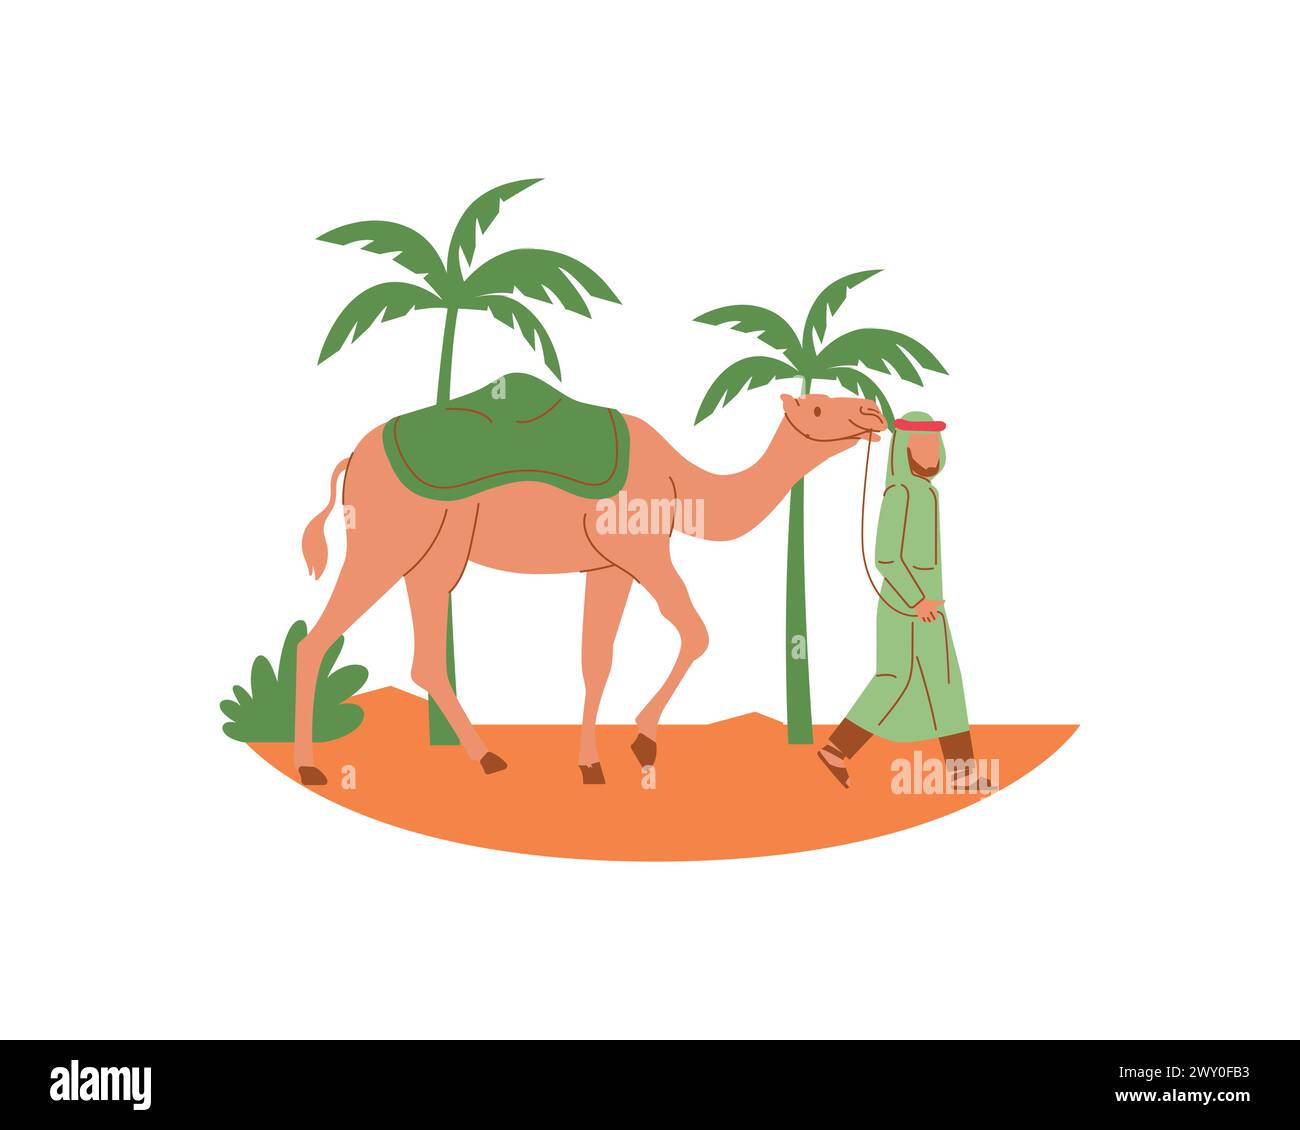 Ein Araber pilgert in der Wüste mit einem Kamel neben den Palmen. Vektor-Illustrationsdesign für Tierzucht und Adoptionskonzept Stock Vektor